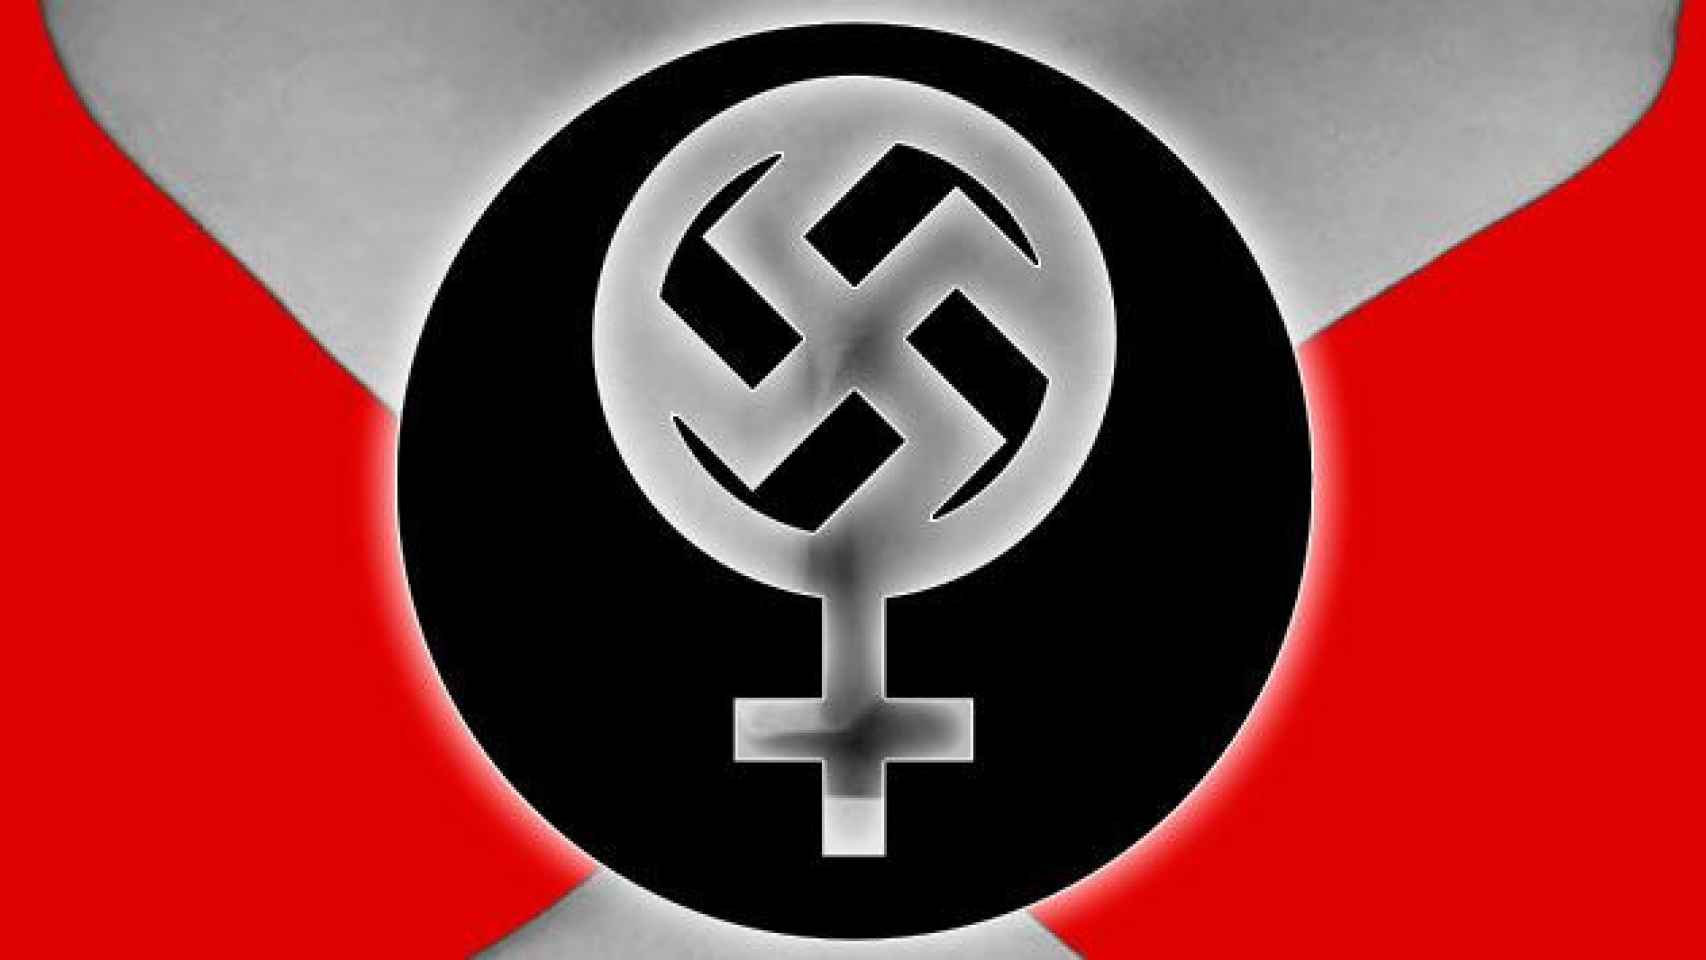 Icono nazi-feminista impreso encima de un sujetador / FOTOMONTAJE DE CG